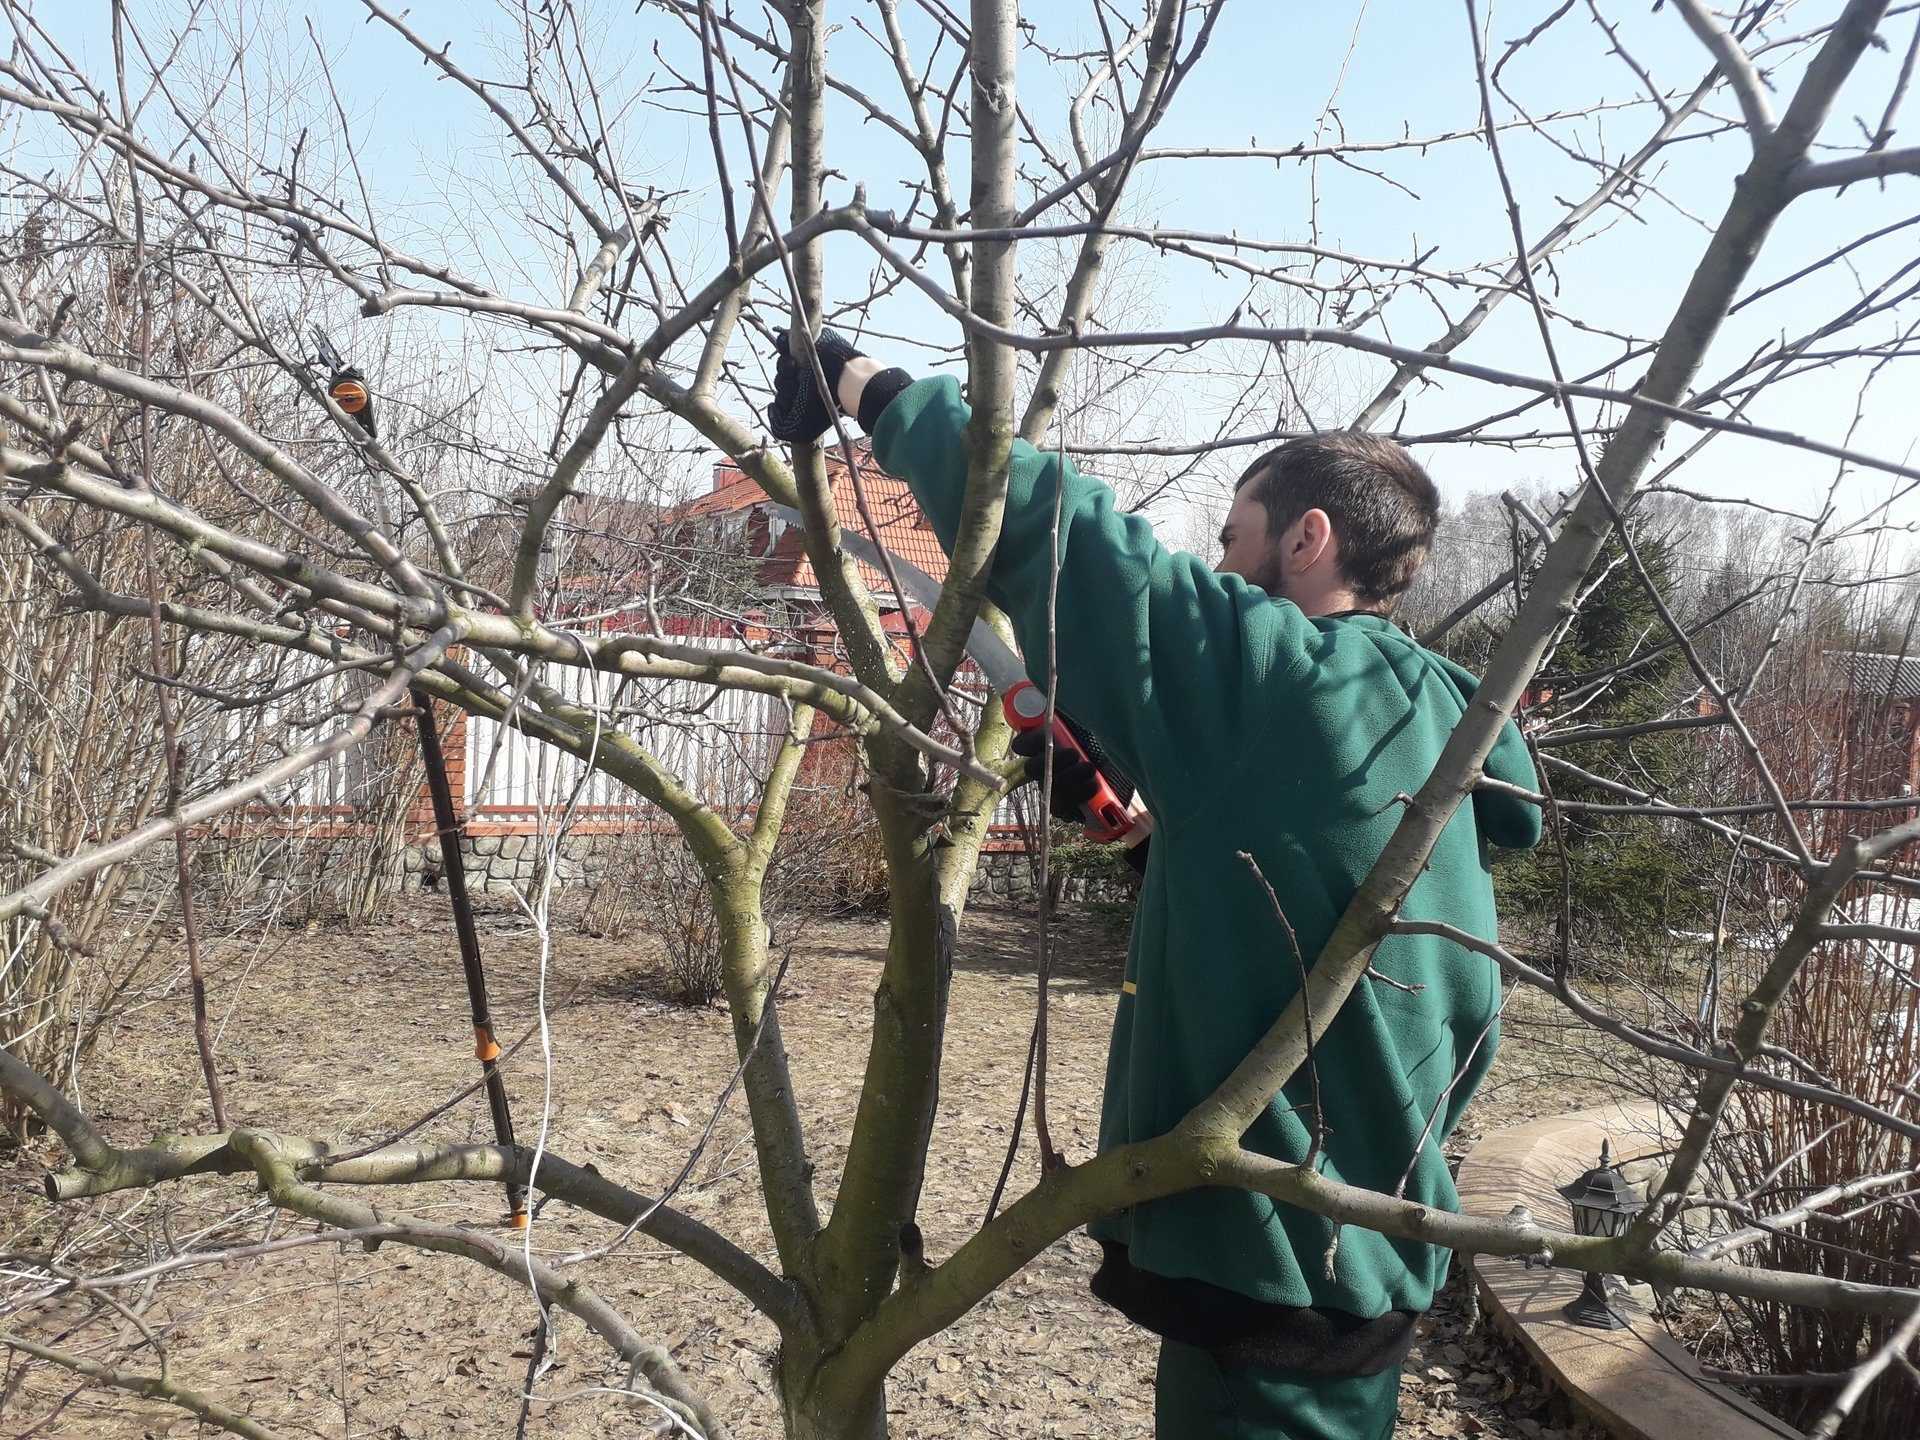 Сроки обрезки плодовых деревьев весной в подмосковье